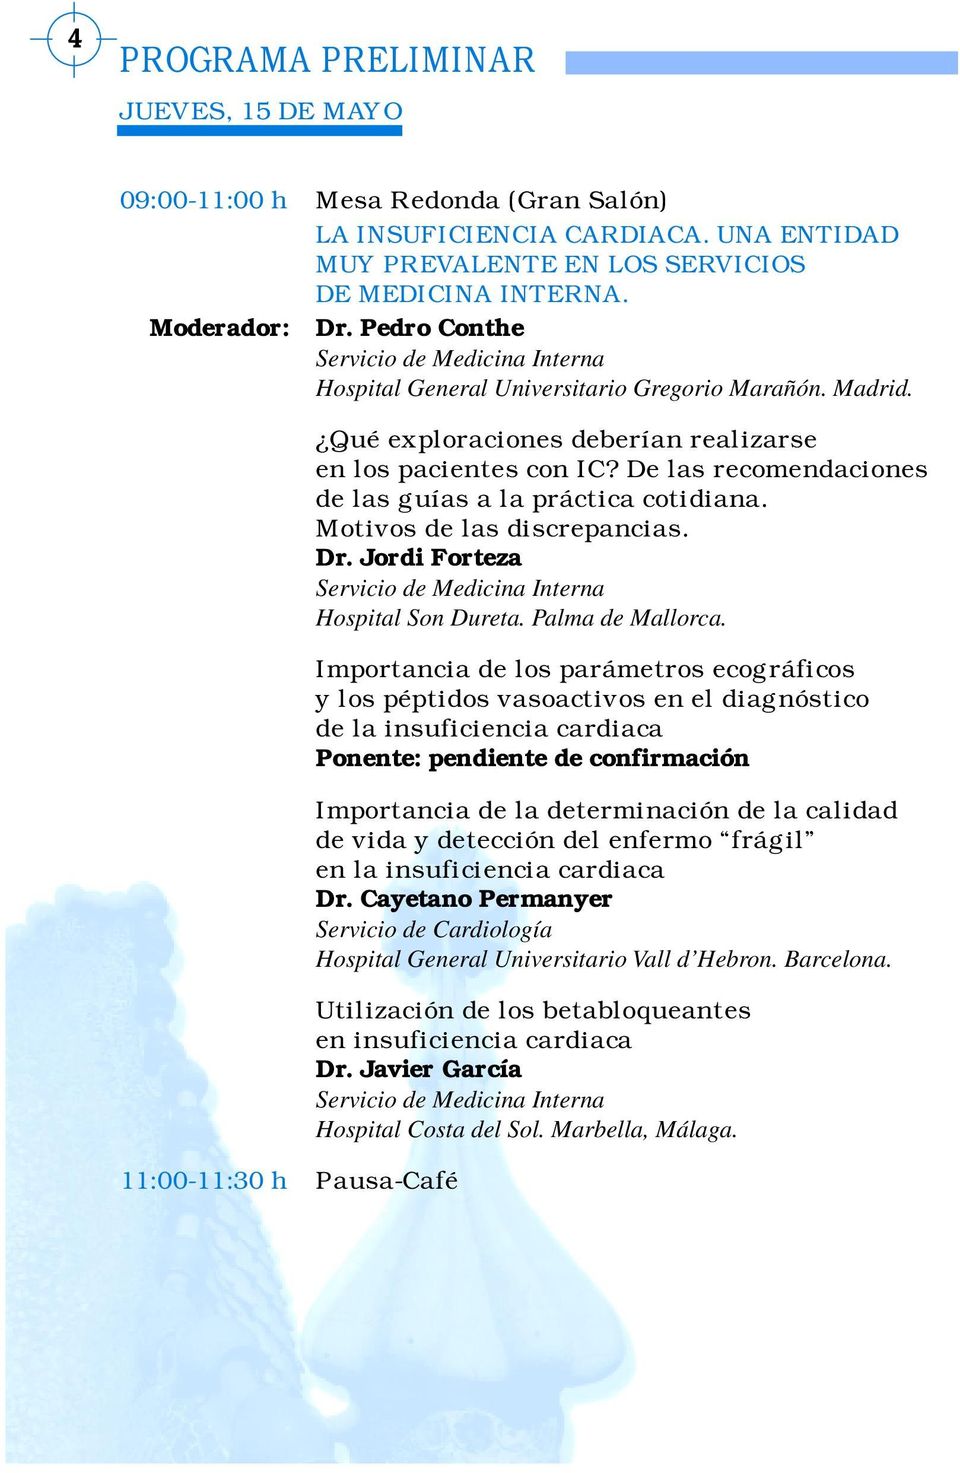 De las recomendaciones de las guías a la práctica cotidiana. Motivos de las discrepancias. Dr. Jordi Forteza Hospital Son Dureta. Palma de Mallorca.